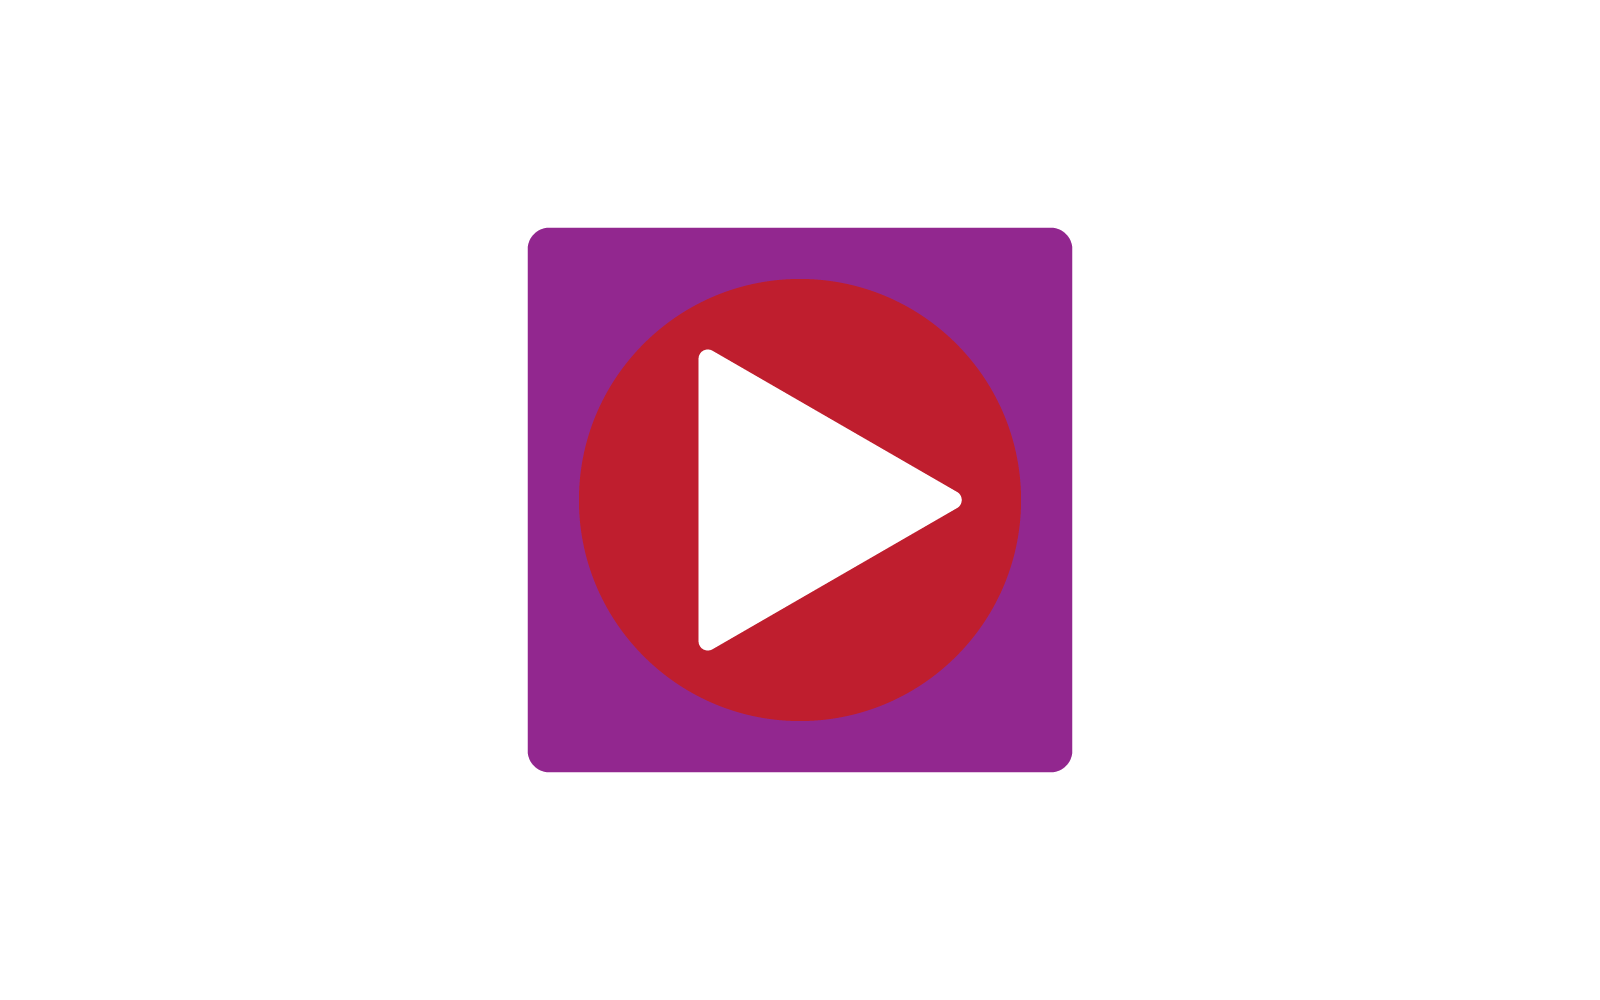 Play button media logo vector flat design